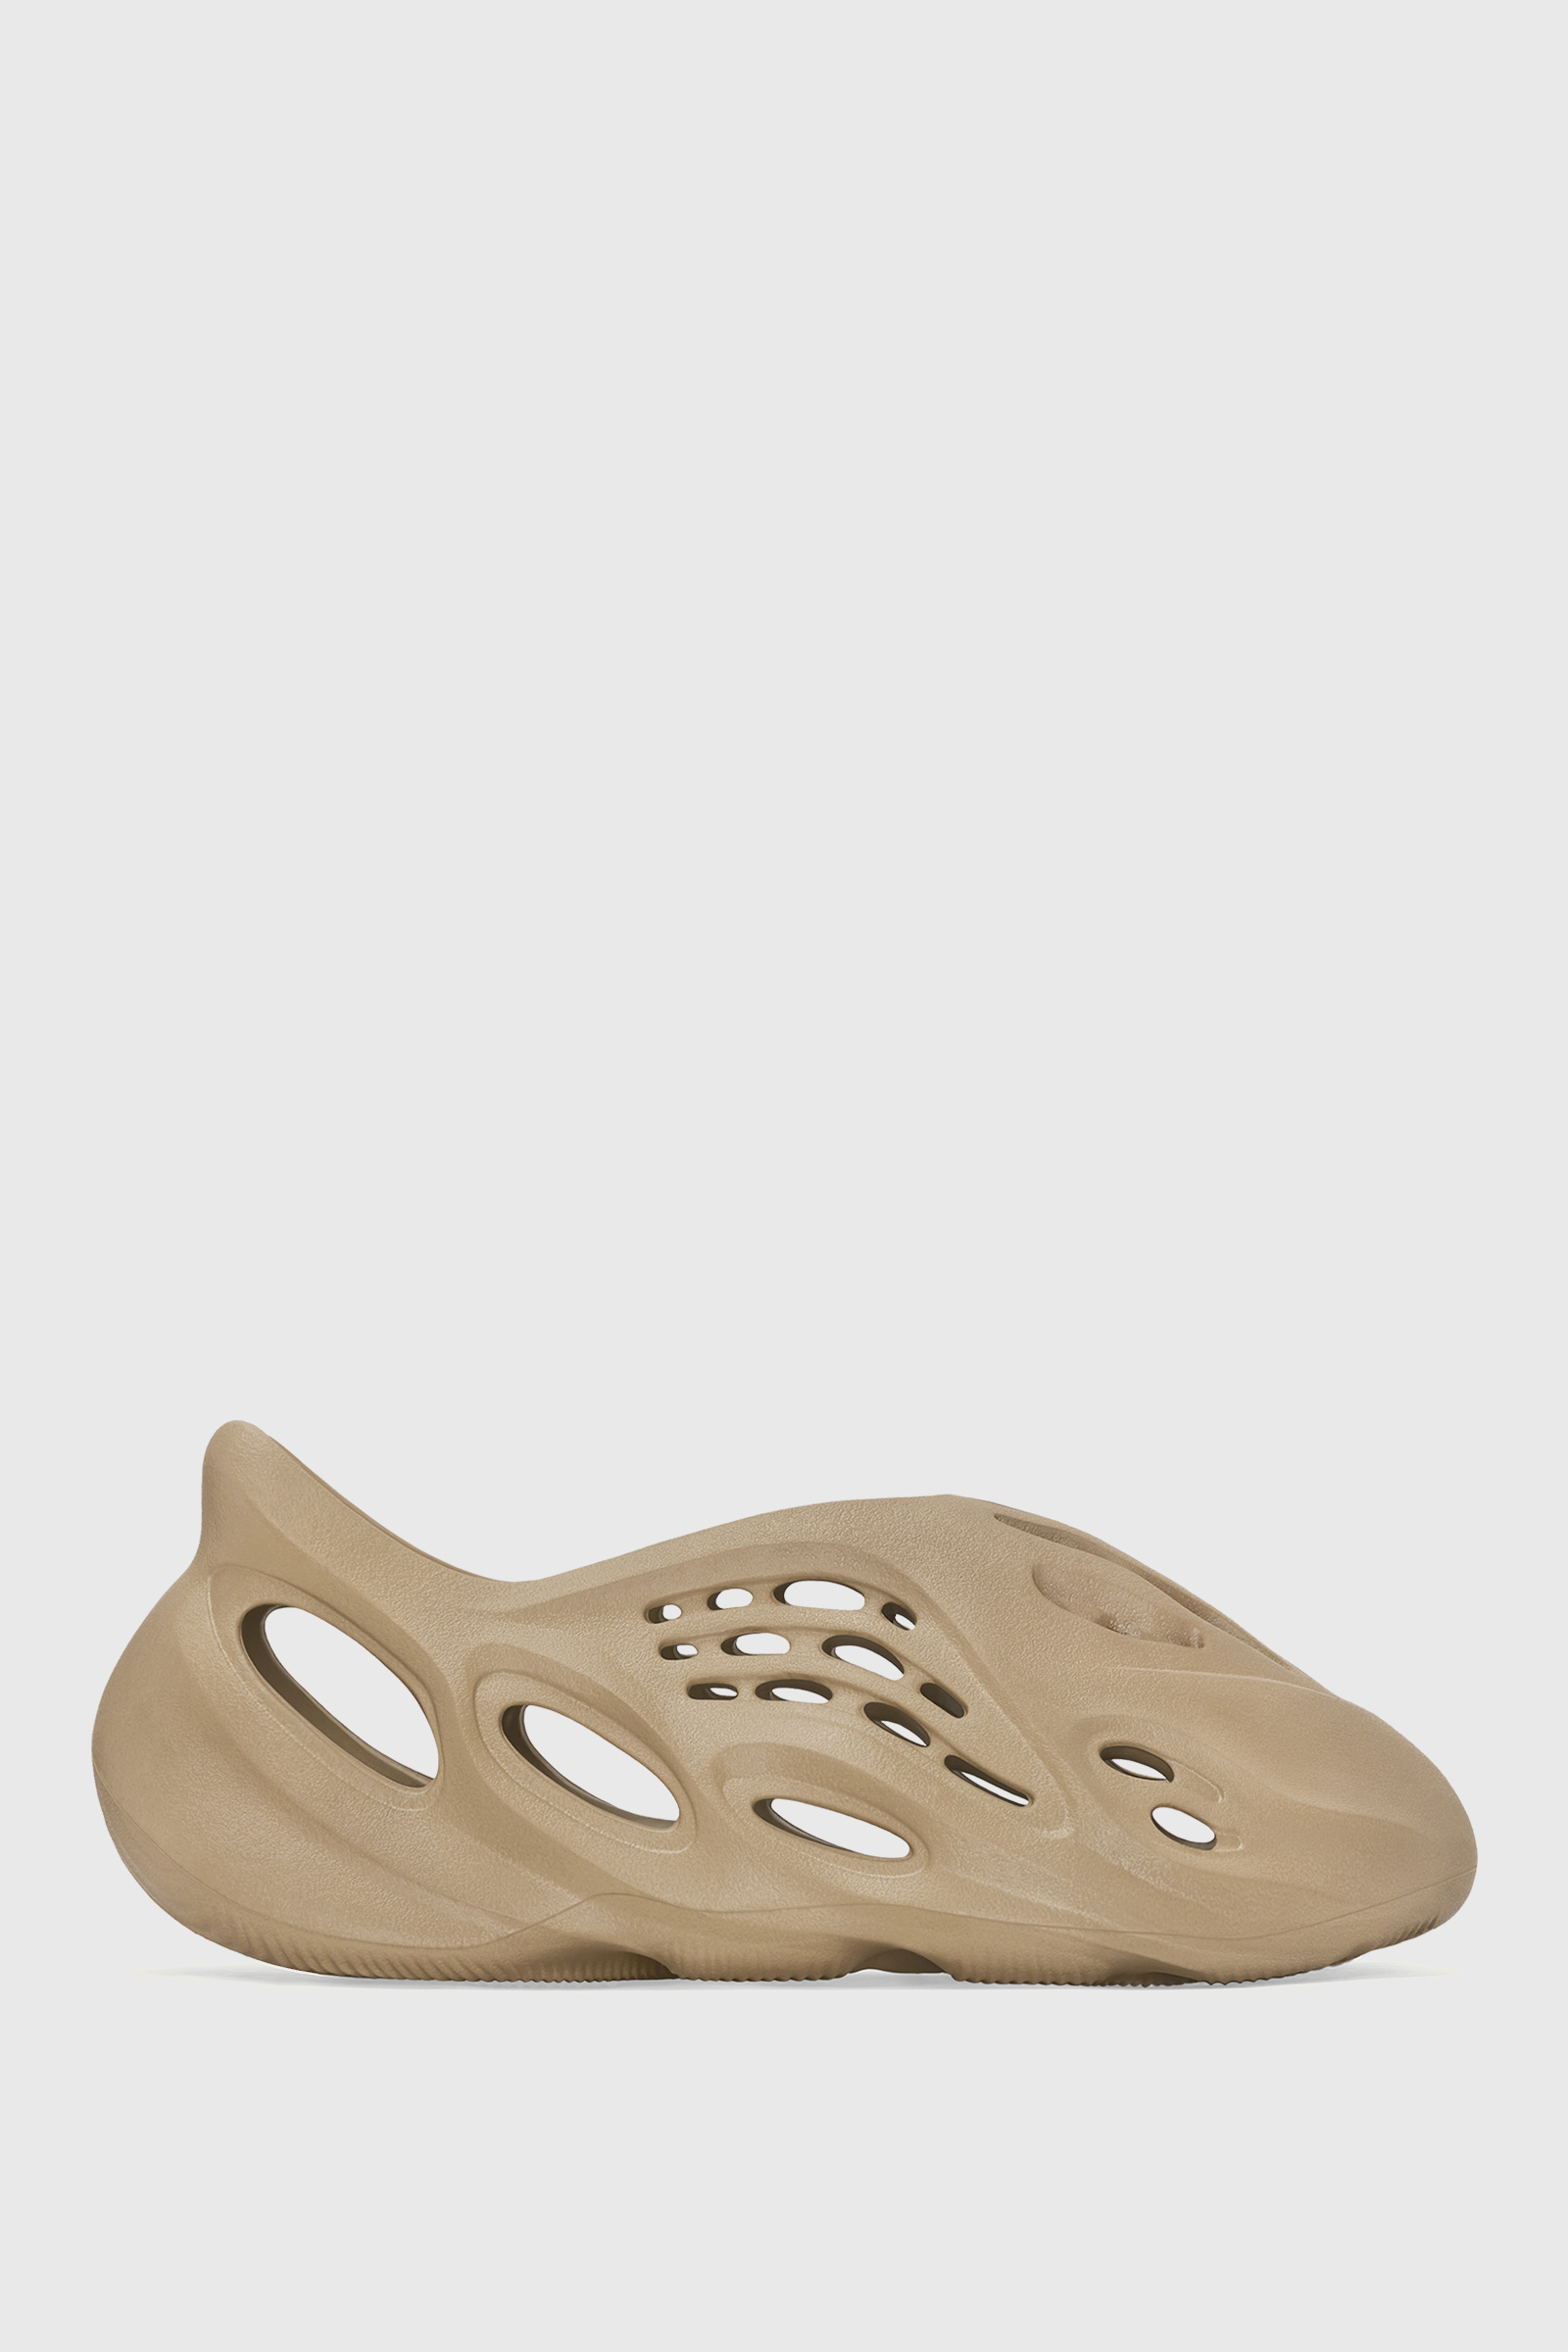 adidas Yeezy Foam Runner 'Ochre' Sand | WoodWood.com